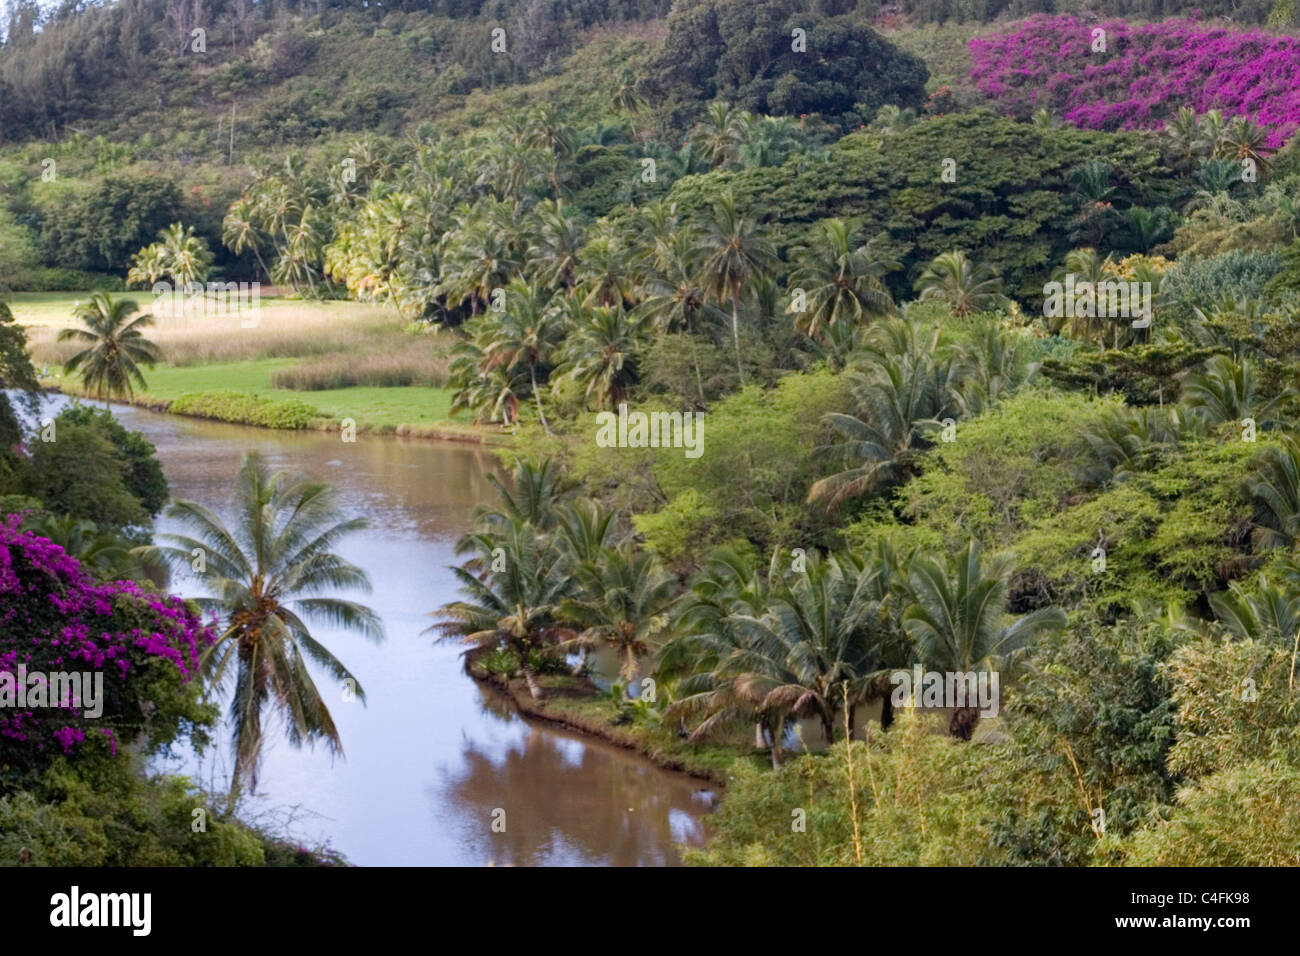 View at National Tropical Botanical Garden.Kauai, Hawaii Stock Photo